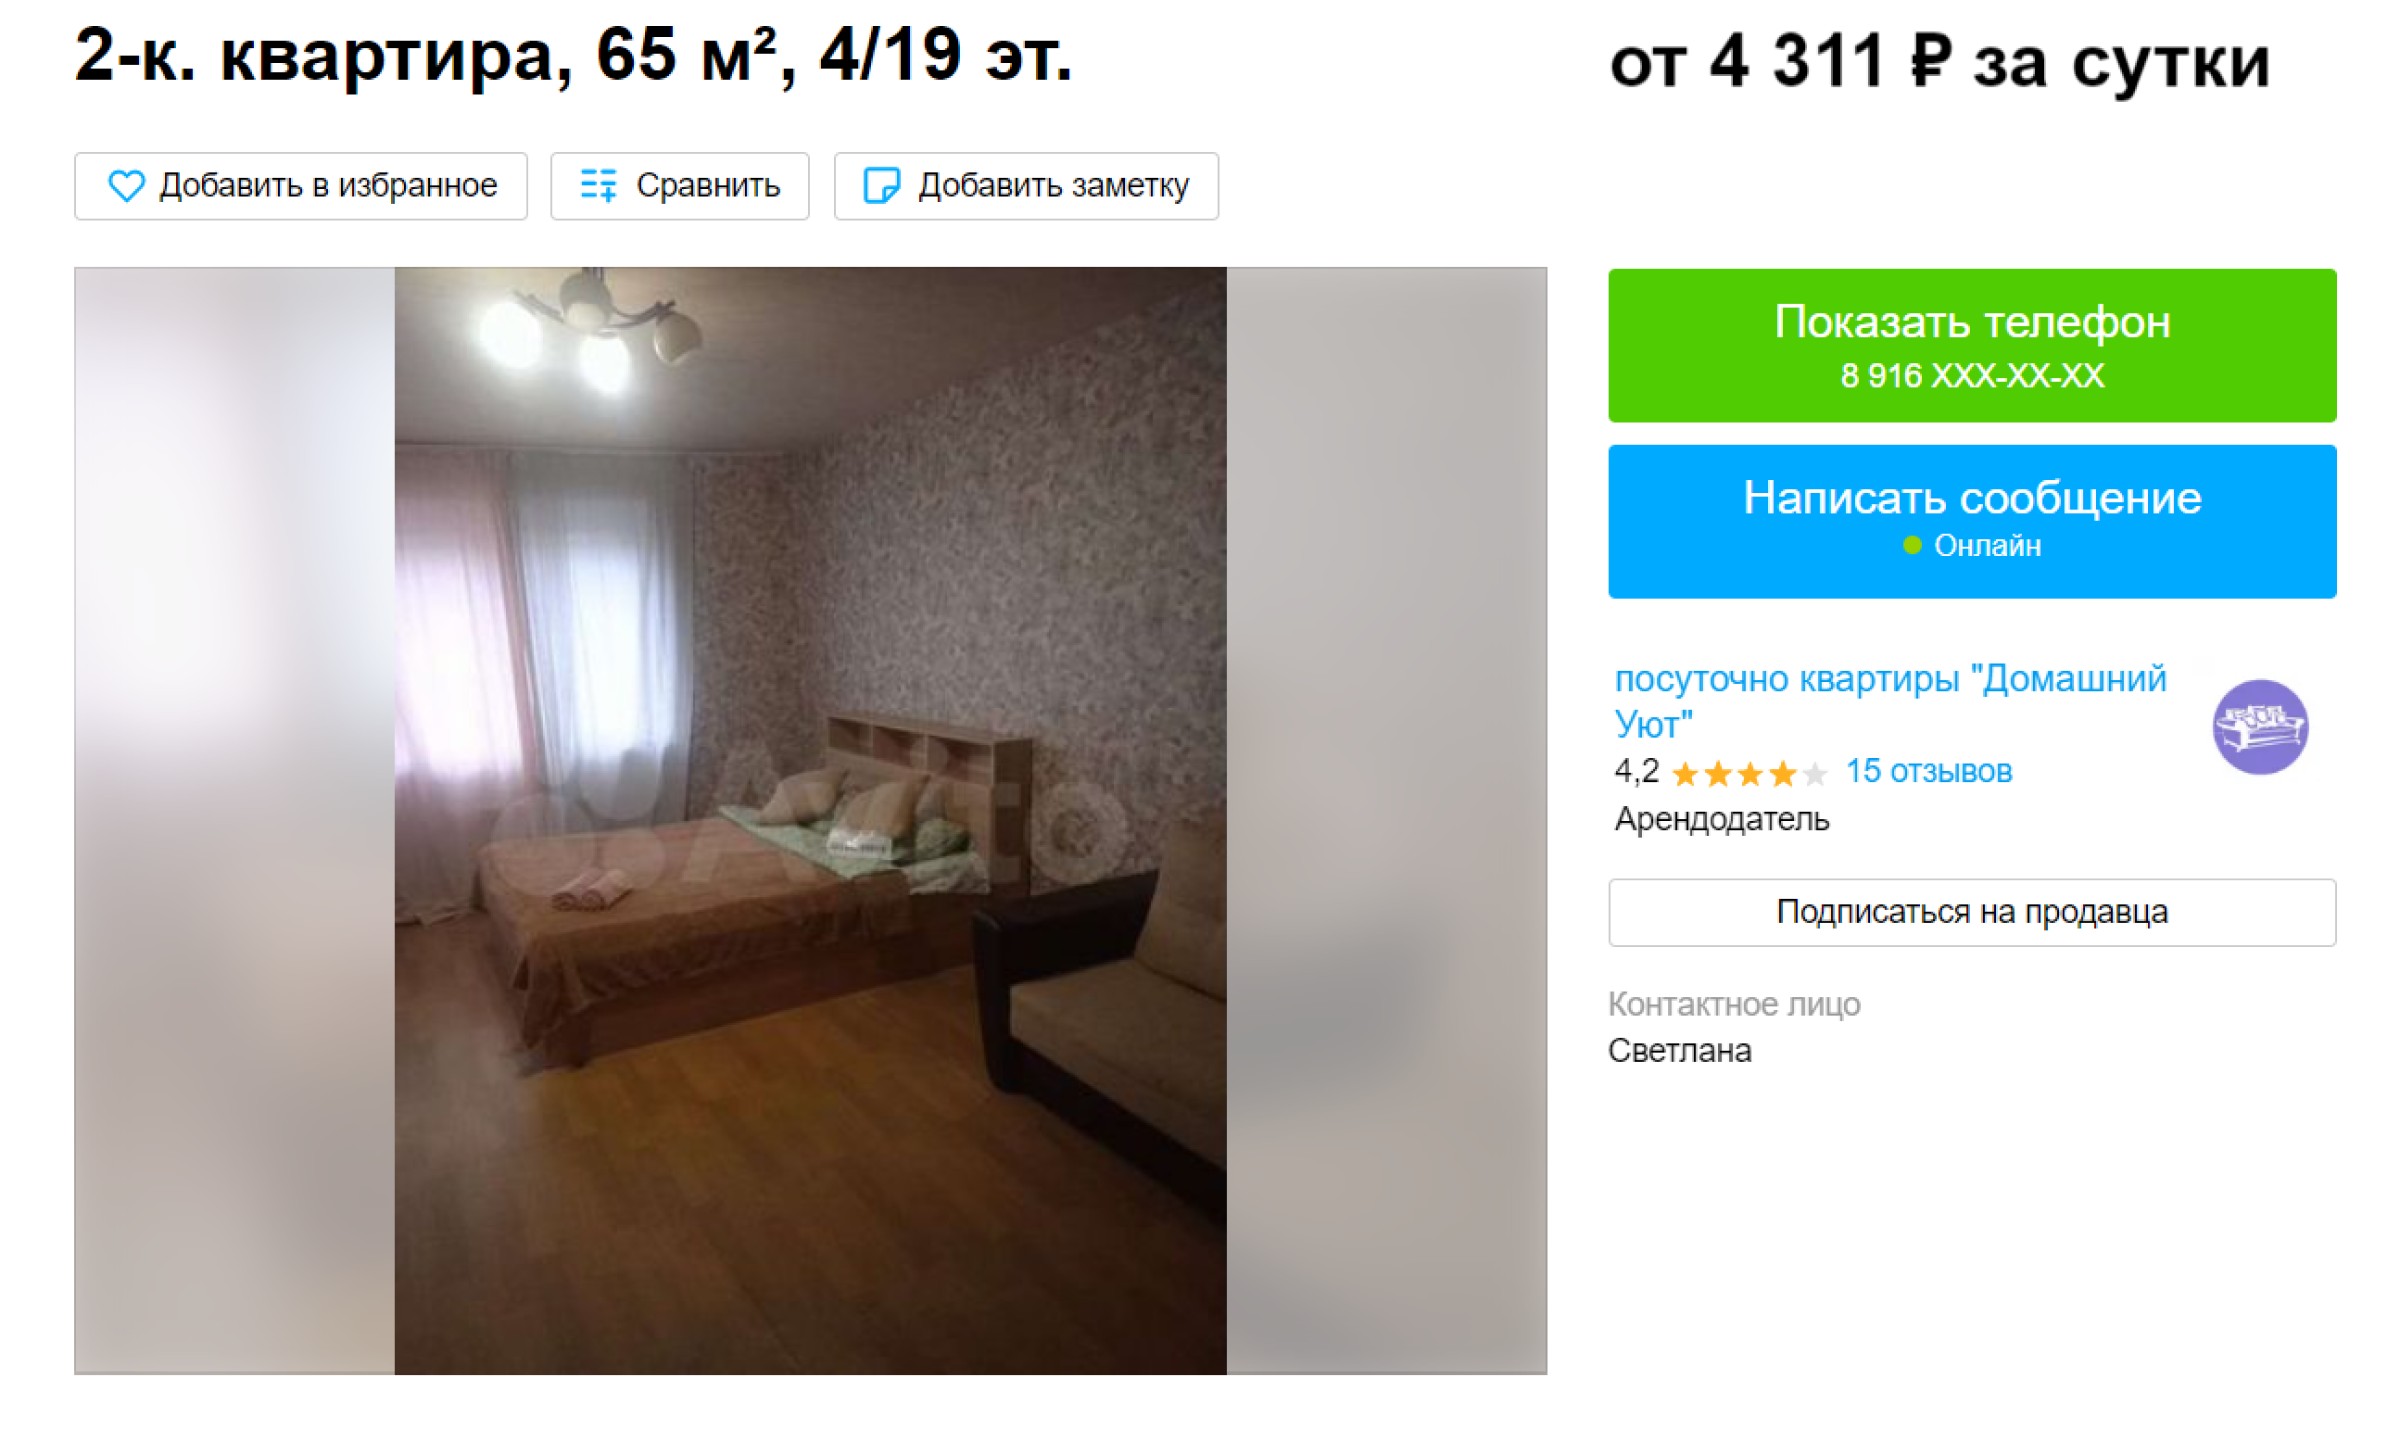 Одна из двухкомнатных квартир в том же районе. Источник: avito.ru